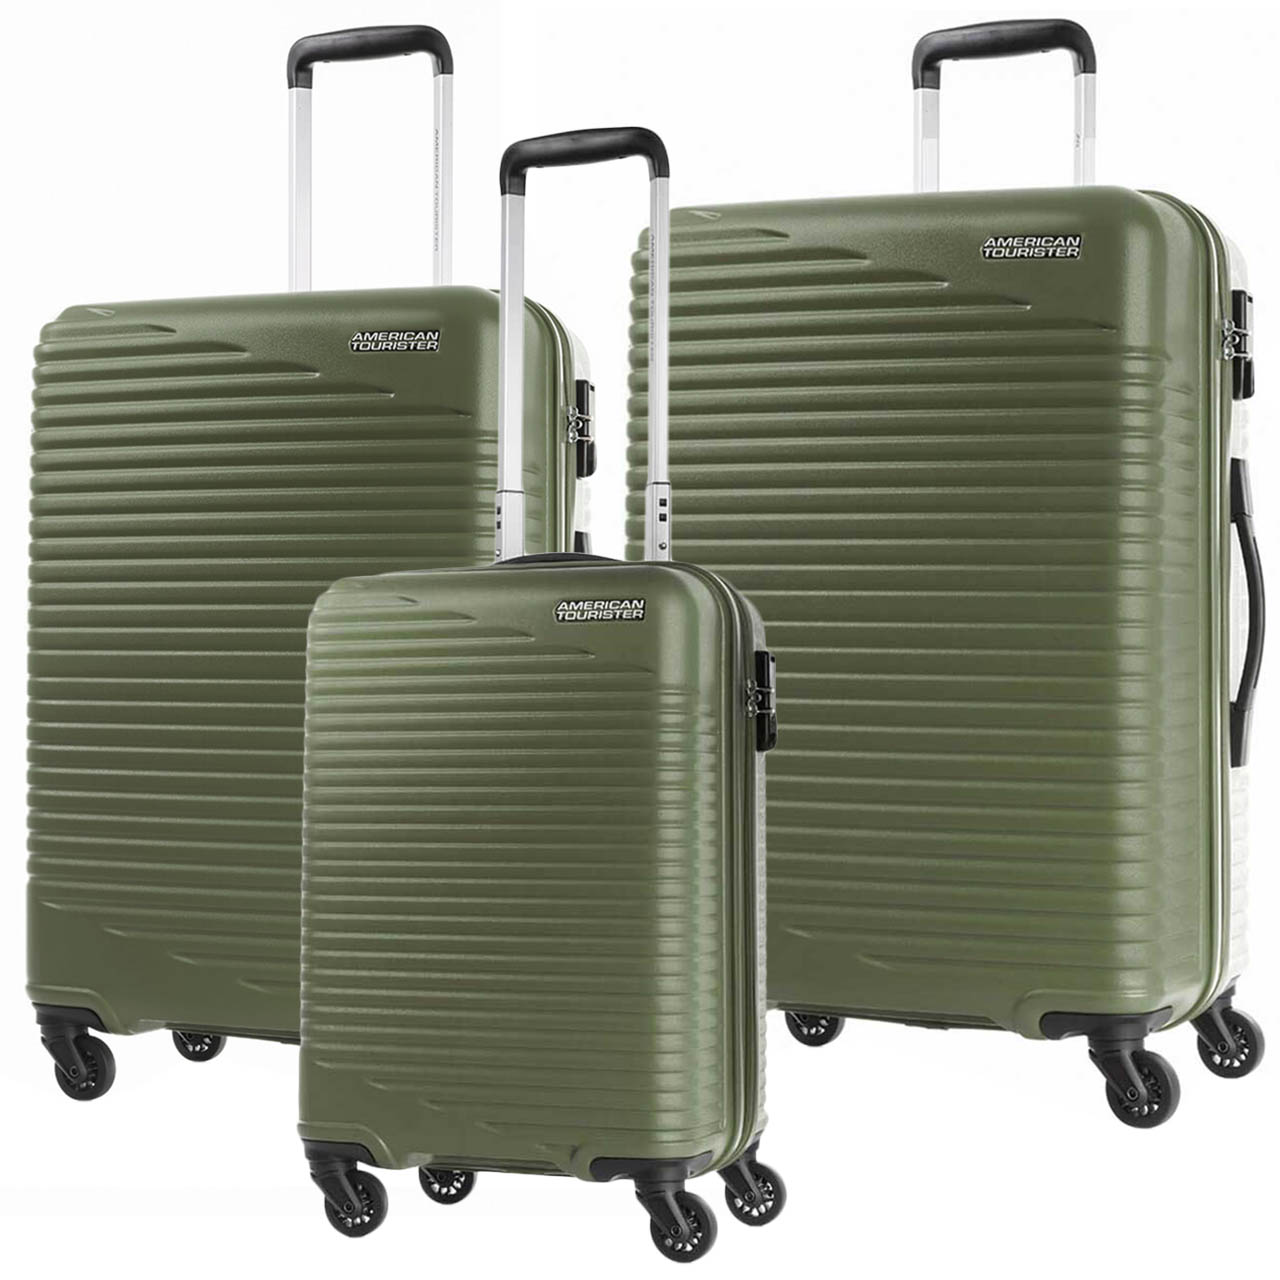 نکته خرید - قیمت روز مجموعه سه عددی چمدان امریکن توریستر مدل SKYPARK HCO خرید